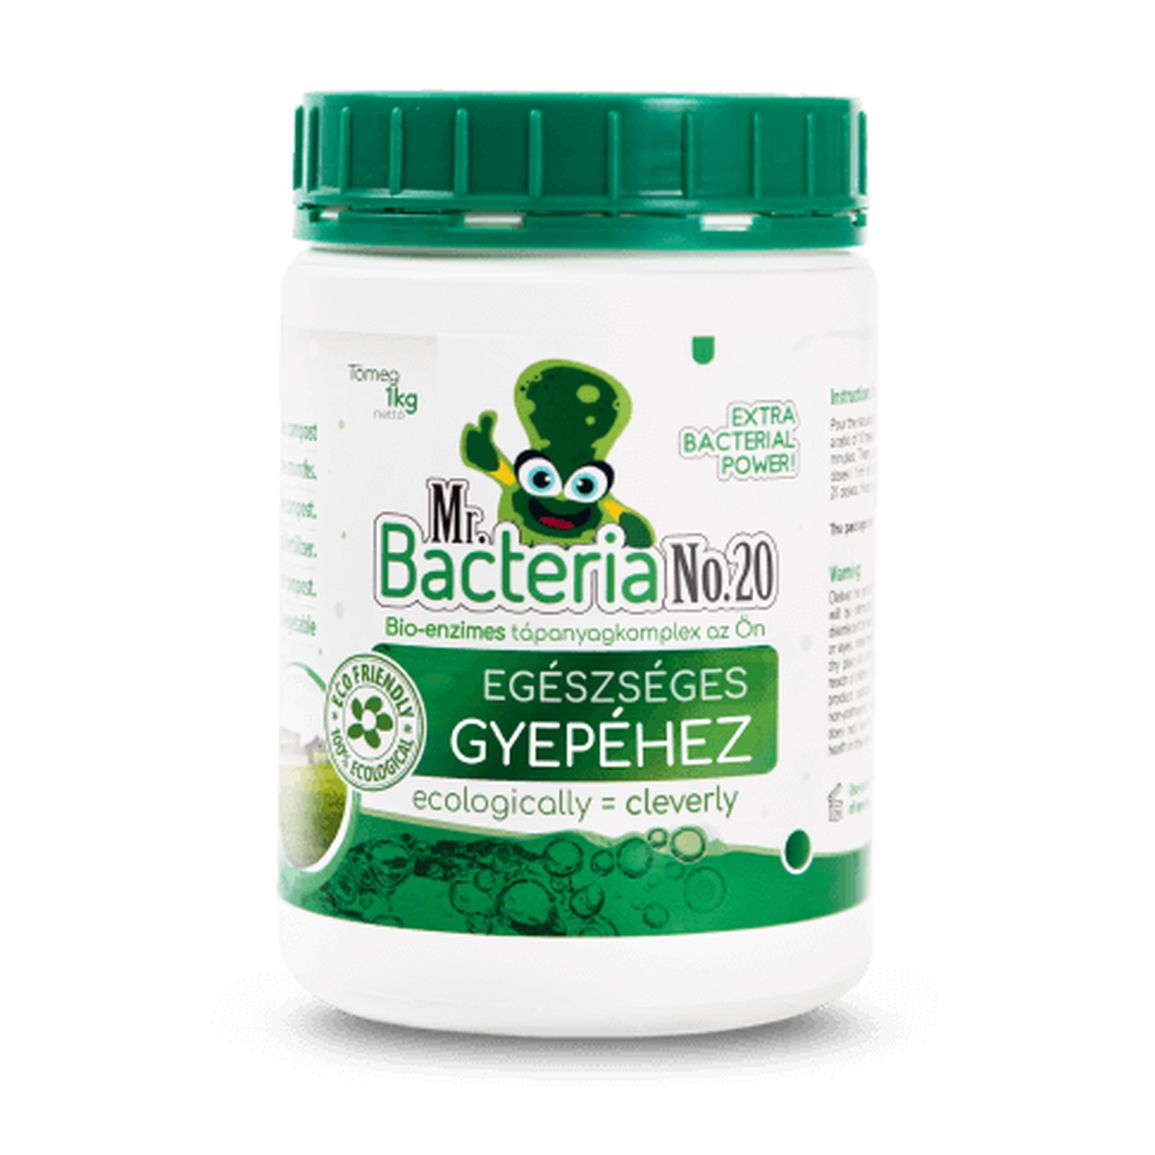 Mr. Bacteria No.20 Bio-enzimes tápanyagkomplex az Ön